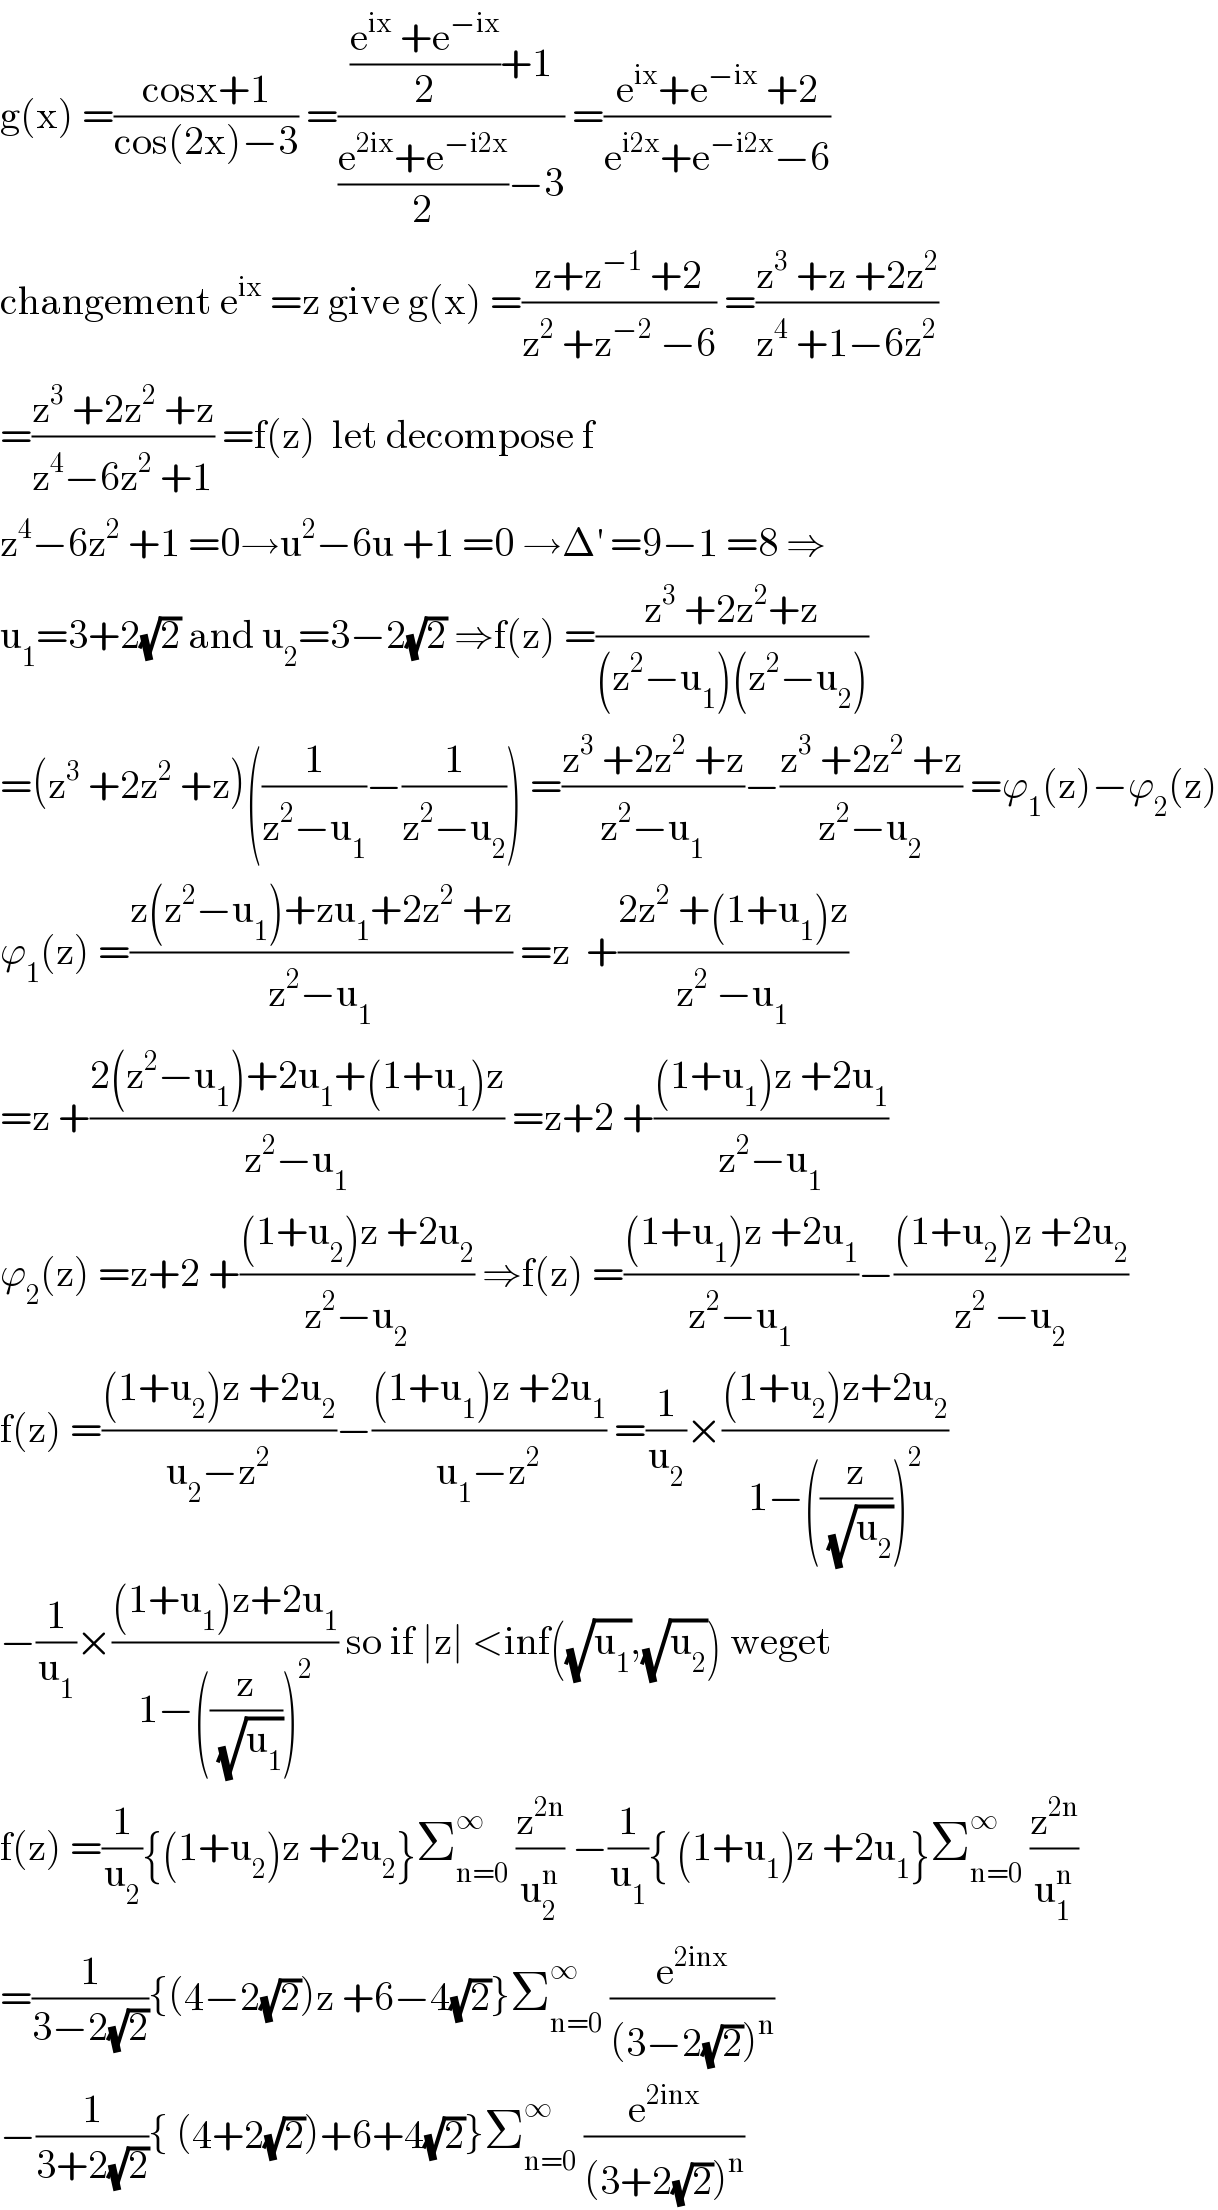 g(x) =((cosx+1)/(cos(2x)−3)) =((((e^(ix)  +e^(−ix) )/2)+1)/(((e^(2ix) +e^(−i2x) )/2)−3)) =((e^(ix) +e^(−ix)  +2)/(e^(i2x) +e^(−i2x) −6))  changement e^(ix)  =z give g(x) =((z+z^(−1)  +2)/(z^2  +z^(−2)  −6)) =((z^3  +z +2z^2 )/(z^4  +1−6z^2 ))  =((z^3  +2z^2  +z)/(z^4 −6z^2  +1)) =f(z)  let decompose f  z^4 −6z^2  +1 =0→u^2 −6u +1 =0 →Δ^′  =9−1 =8 ⇒  u_1 =3+2(√2) and u_2 =3−2(√2) ⇒f(z) =((z^3  +2z^2 +z)/((z^2 −u_1 )(z^2 −u_2 )))  =(z^3  +2z^2  +z)((1/(z^2 −u_1 ))−(1/(z^2 −u_2 ))) =((z^3  +2z^2  +z)/(z^2 −u_1 ))−((z^3  +2z^2  +z)/(z^2 −u_2 )) =ϕ_1 (z)−ϕ_2 (z)  ϕ_1 (z) =((z(z^2 −u_1 )+zu_1 +2z^2  +z)/(z^2 −u_1 )) =z  +((2z^2  +(1+u_1 )z)/(z^2  −u_1 ))  =z +((2(z^2 −u_1 )+2u_1 +(1+u_1 )z)/(z^2 −u_1 )) =z+2 +(((1+u_1 )z +2u_1 )/(z^2 −u_1 ))  ϕ_2 (z) =z+2 +(((1+u_2 )z +2u_2 )/(z^2 −u_2 )) ⇒f(z) =(((1+u_1 )z +2u_1 )/(z^2 −u_1 ))−(((1+u_2 )z +2u_2 )/(z^2  −u_2 ))  f(z) =(((1+u_2 )z +2u_2 )/(u_2 −z^2 ))−(((1+u_1 )z +2u_1 )/(u_1 −z^2 )) =(1/u_2 )×(((1+u_2 )z+2u_2 )/(1−((z/(√u_2 )))^2 ))  −(1/u_1 )×(((1+u_1 )z+2u_1 )/(1−((z/(√u_1 )))^2 )) so if ∣z∣ <inf((√u_1 ),(√u_2 )) weget   f(z) =(1/u_2 ){(1+u_2 )z +2u_2 }Σ_(n=0) ^∞  (z^(2n) /u_2 ^n ) −(1/u_1 ){ (1+u_1 )z +2u_1 }Σ_(n=0) ^∞  (z^(2n) /u_1 ^n )  =(1/(3−2(√2))){(4−2(√2))z +6−4(√2)}Σ_(n=0) ^∞  (e^(2inx) /((3−2(√2))^n ))  −(1/(3+2(√2))){ (4+2(√2))+6+4(√2)}Σ_(n=0) ^∞  (e^(2inx) /((3+2(√2))^n ))  